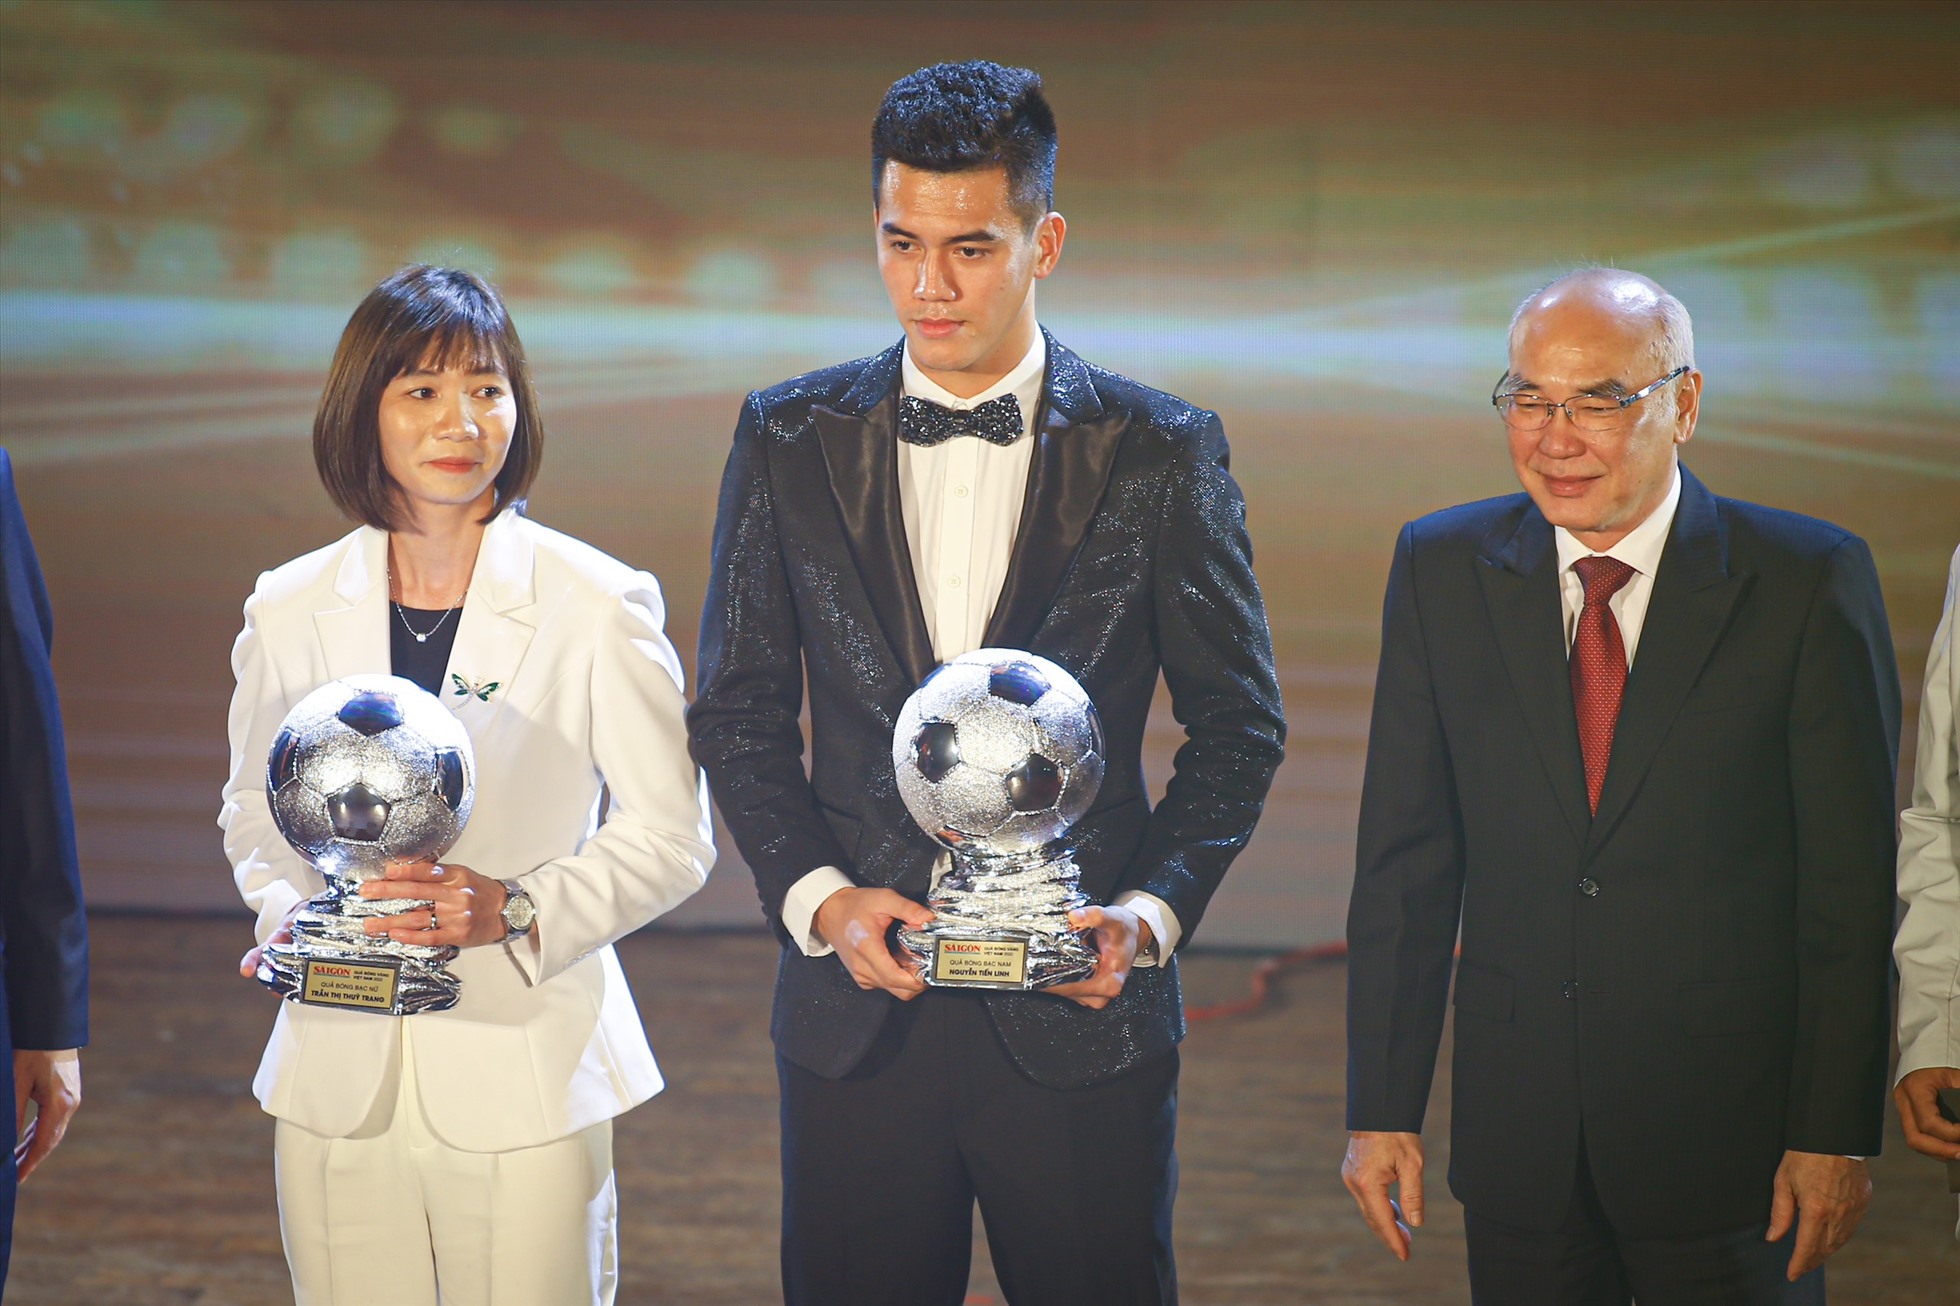 Tiến Linh nhận danh hiệu Quả bóng bạc Việt Nam 2022 khiến nhiều người tiếc nuối. Ảnh: Thanh Vũ